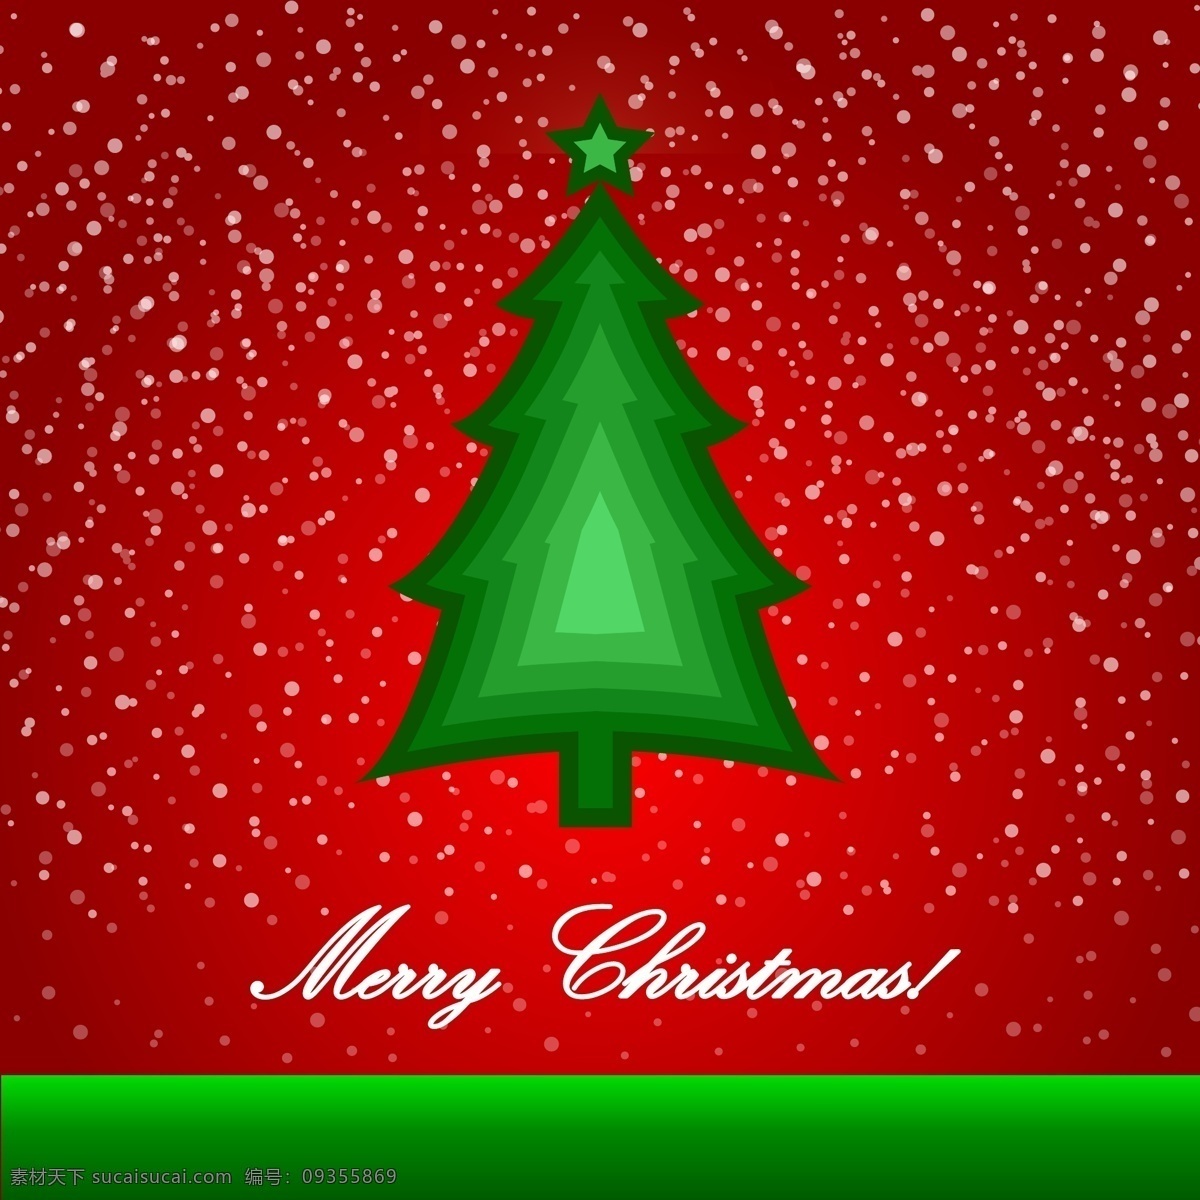 圣诞节 矢量 元素 背景 图 christmas merry 插画 创意 光晕 模板 设计稿 圣诞树 五角星 节日大全 源文件 节日素材